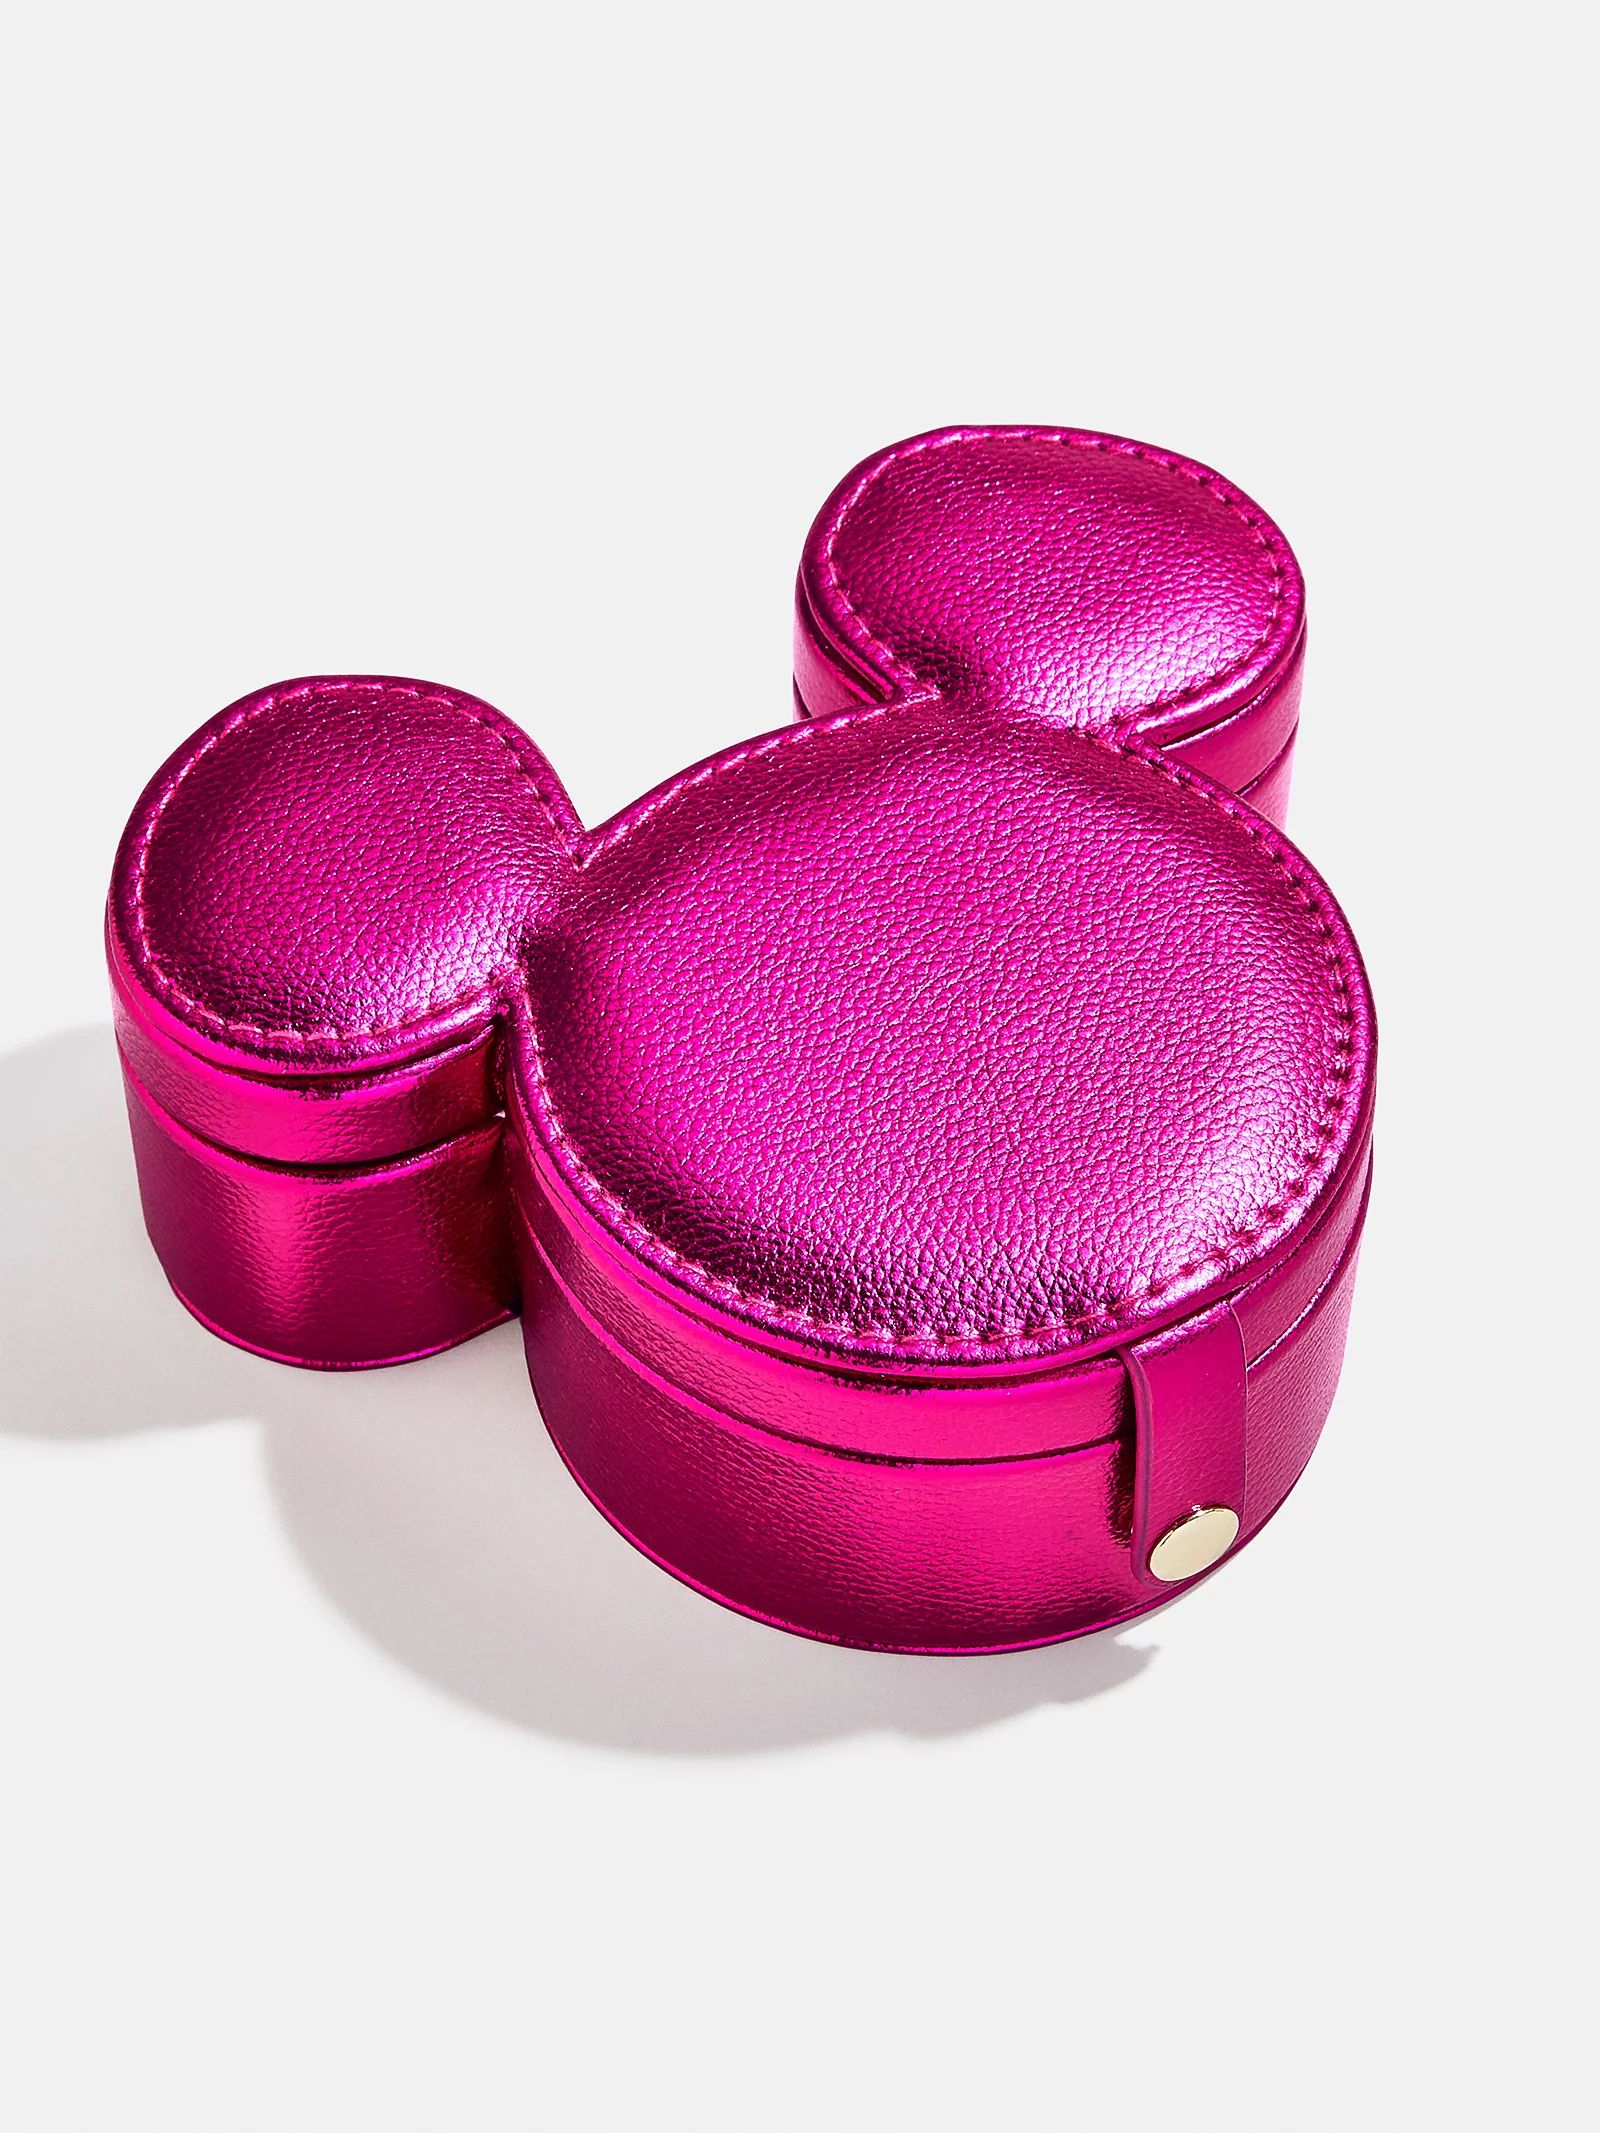 Mickey Mouse Disney Metallic Storage Case - Metallic Hot Pink | BaubleBar (US)